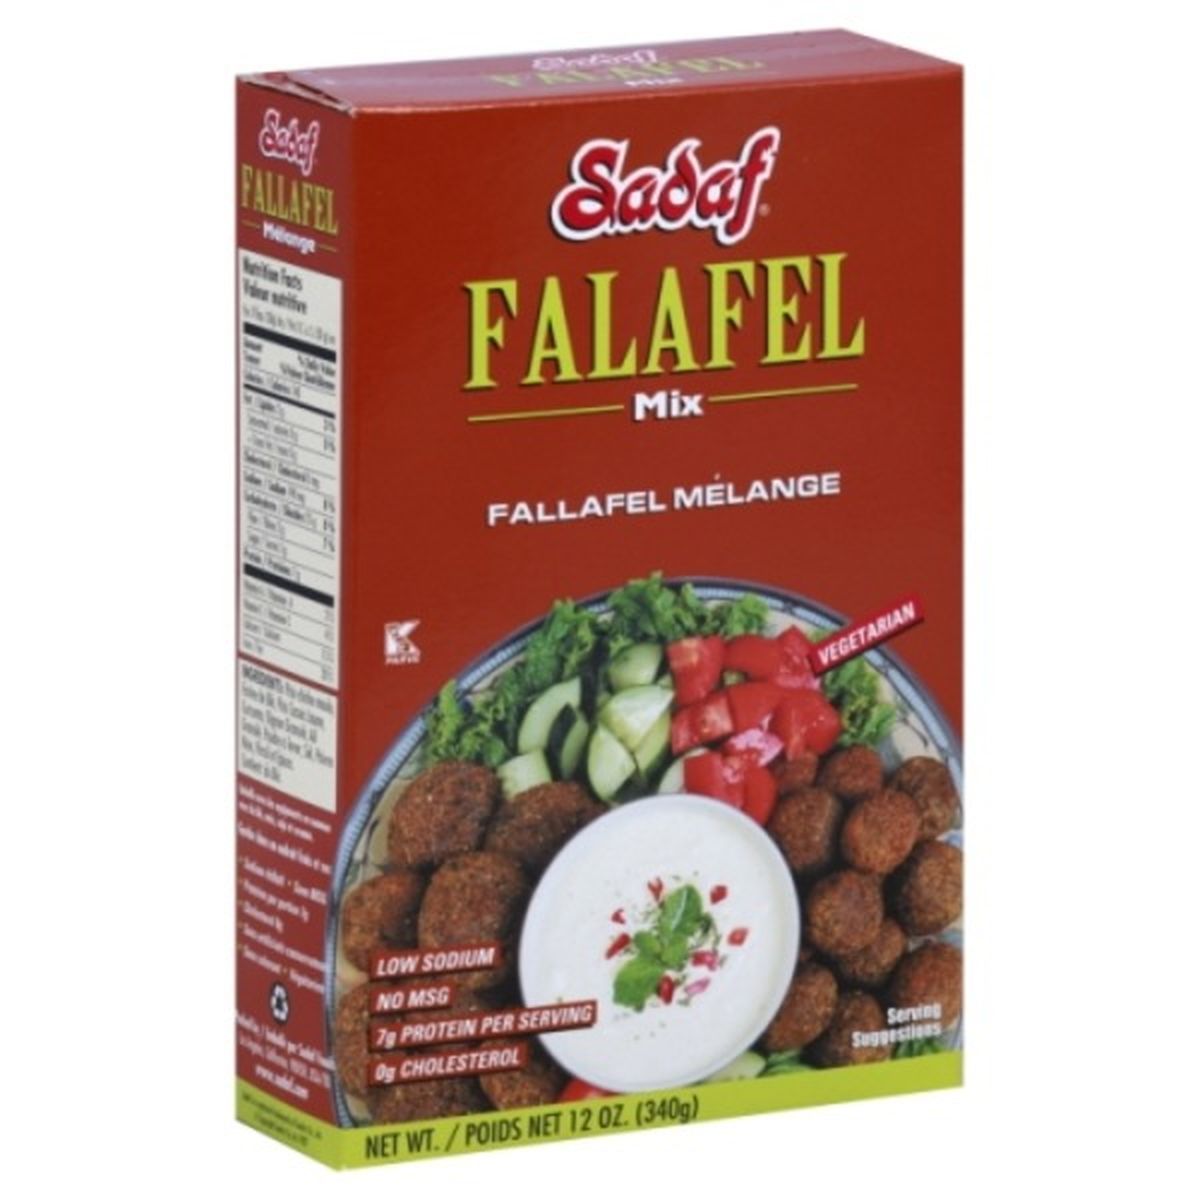 Calories in Sadaf Falafel Mix